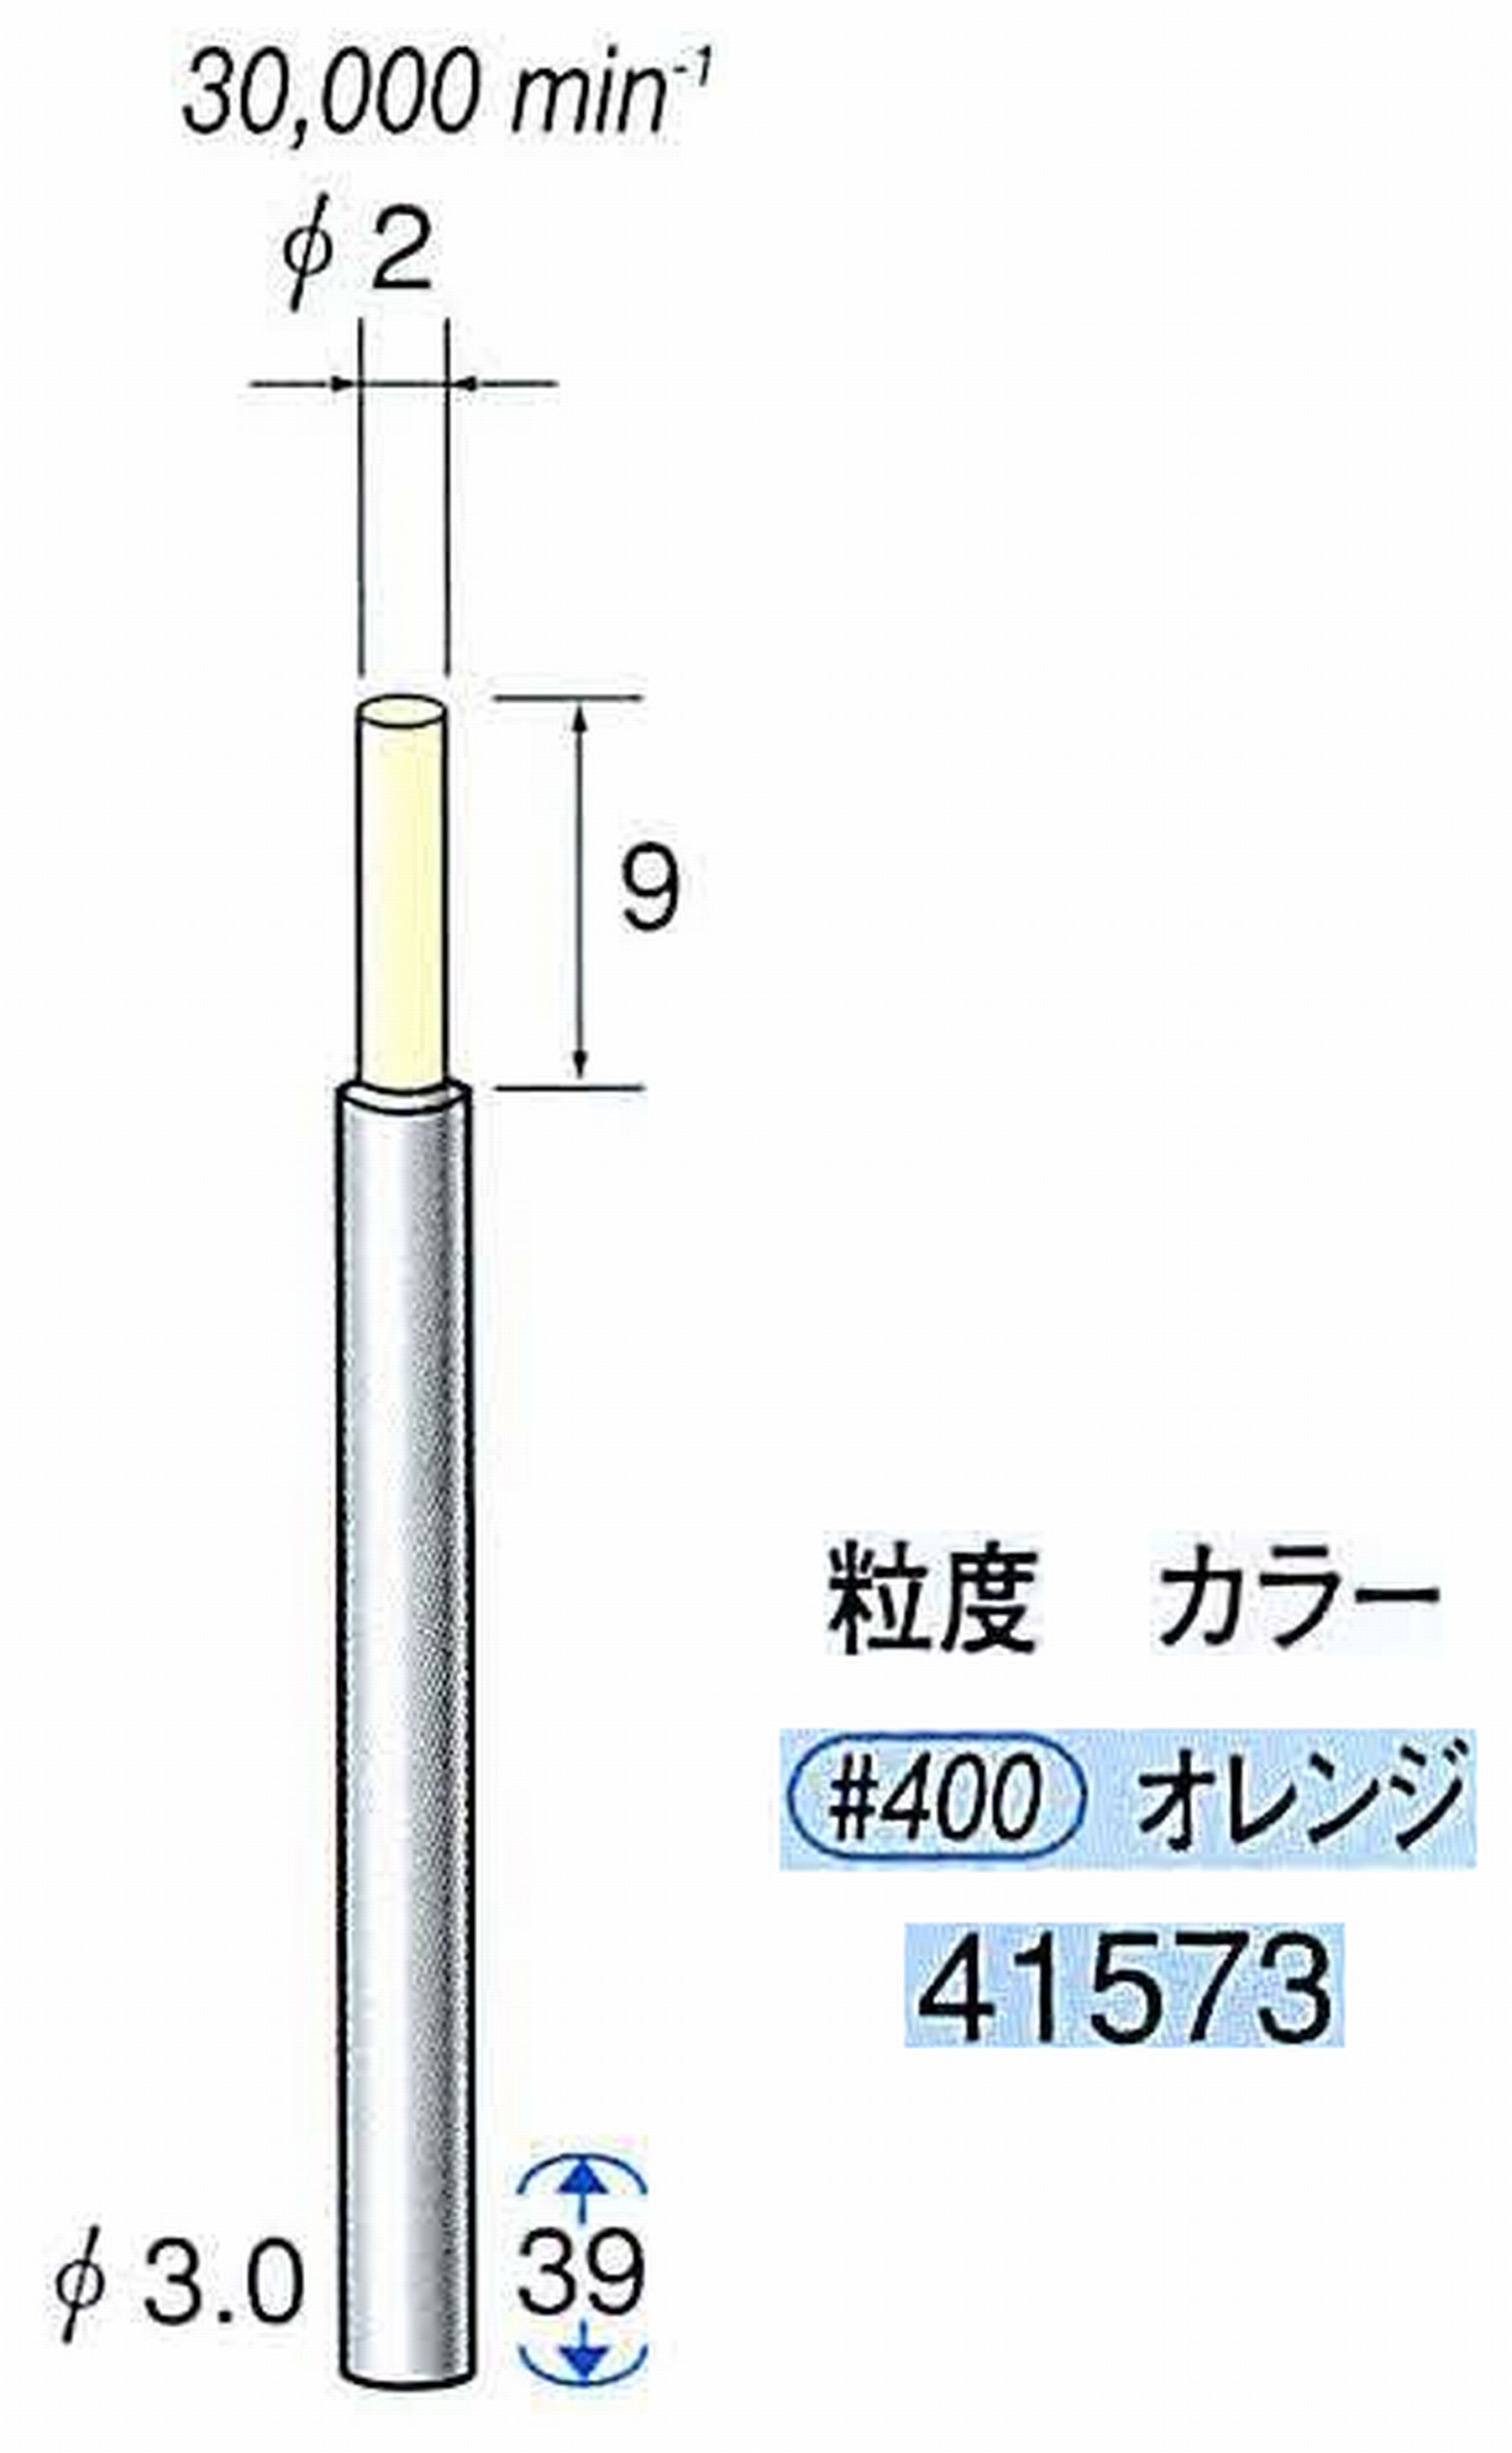 ナカニシ/NAKANISHI セラファイバー精密軸付砥石(カラー オレンジ) 軸径(シャンク) φ3.0mm 41573